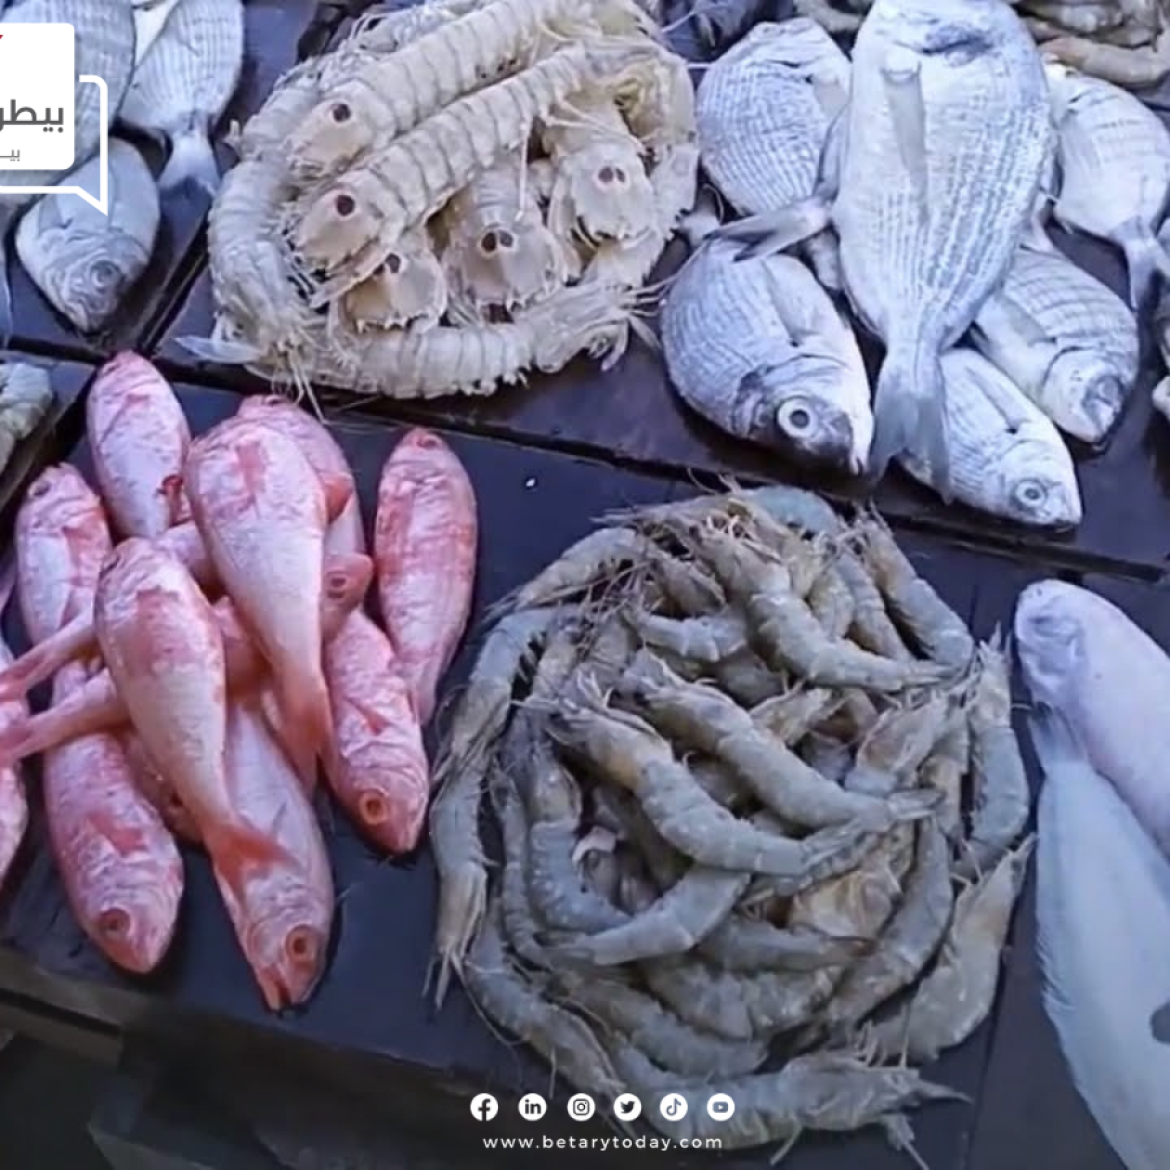 تعرف على أسعار الأسماك والمأكولات البحرية اليوم الأحد في الأسواق بعد تراجع الفراخ